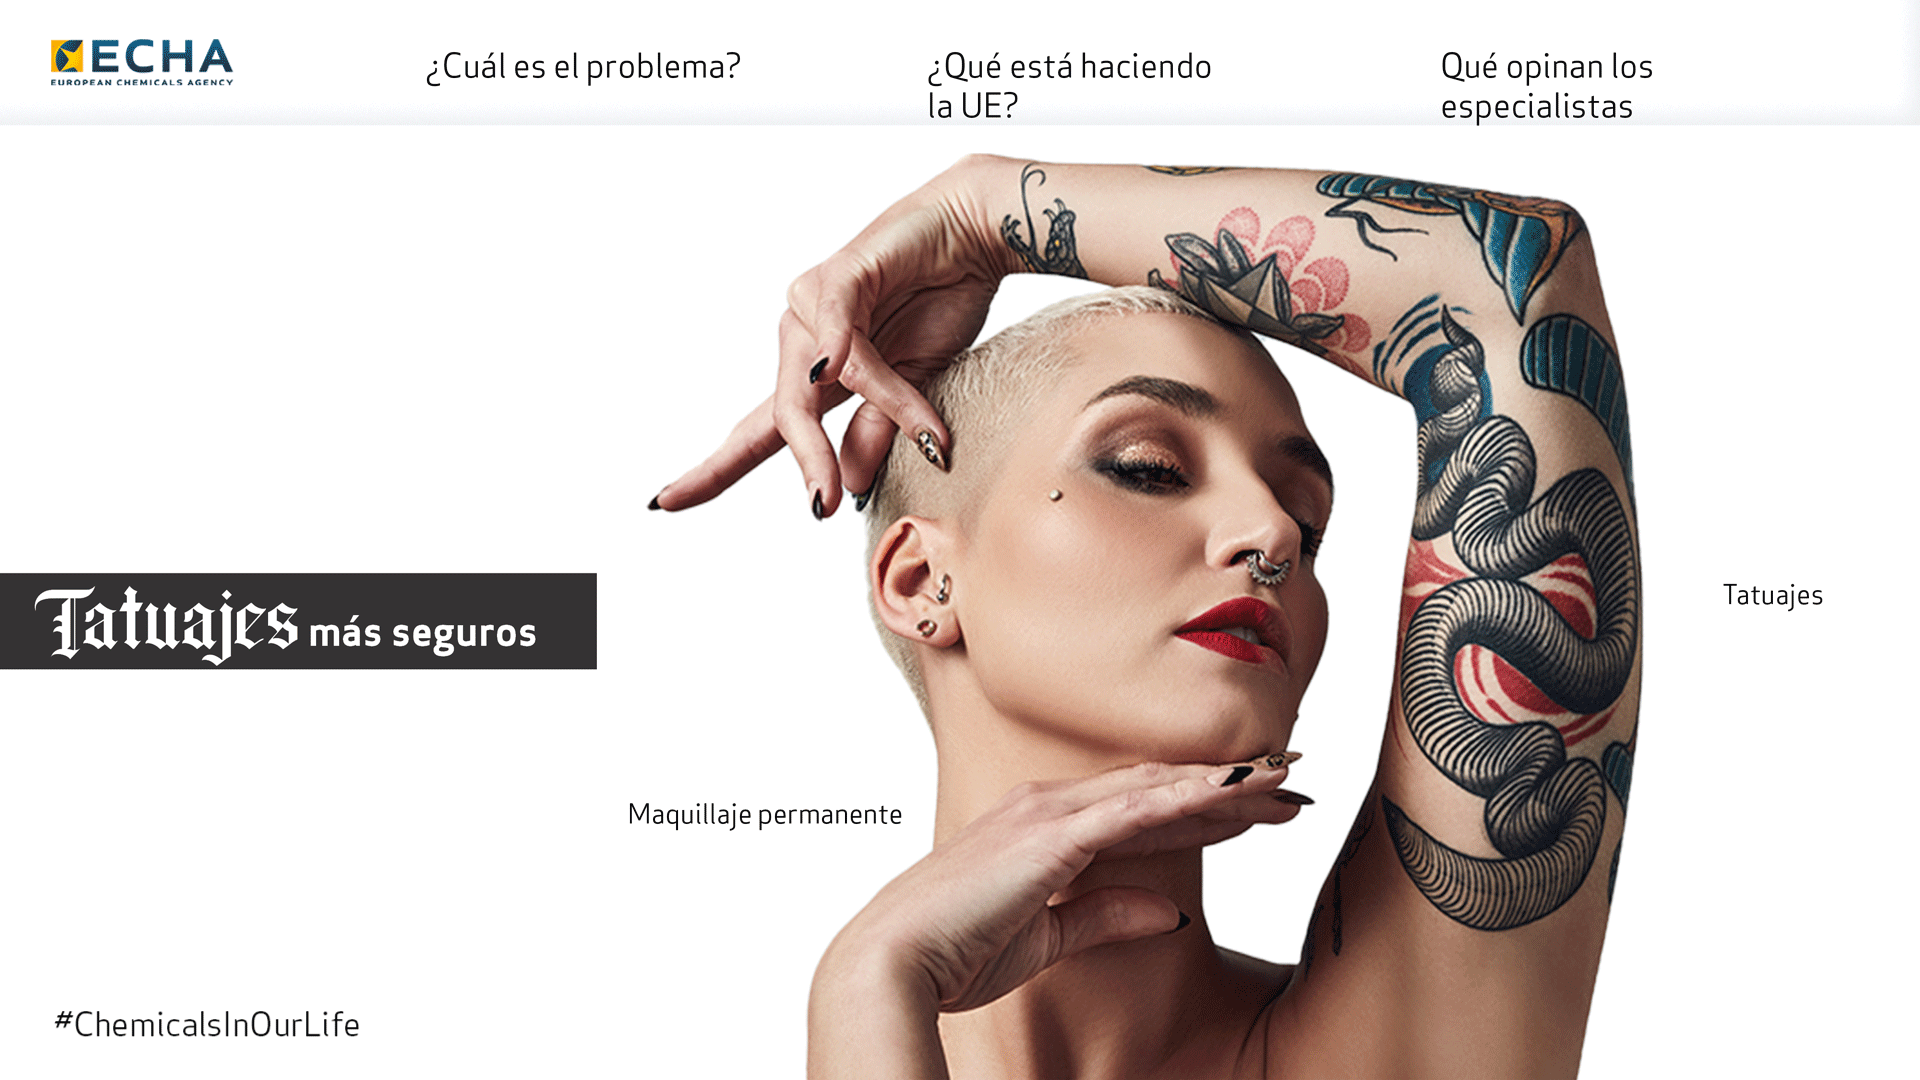 Tatuajes Para Identificar, Seguridad